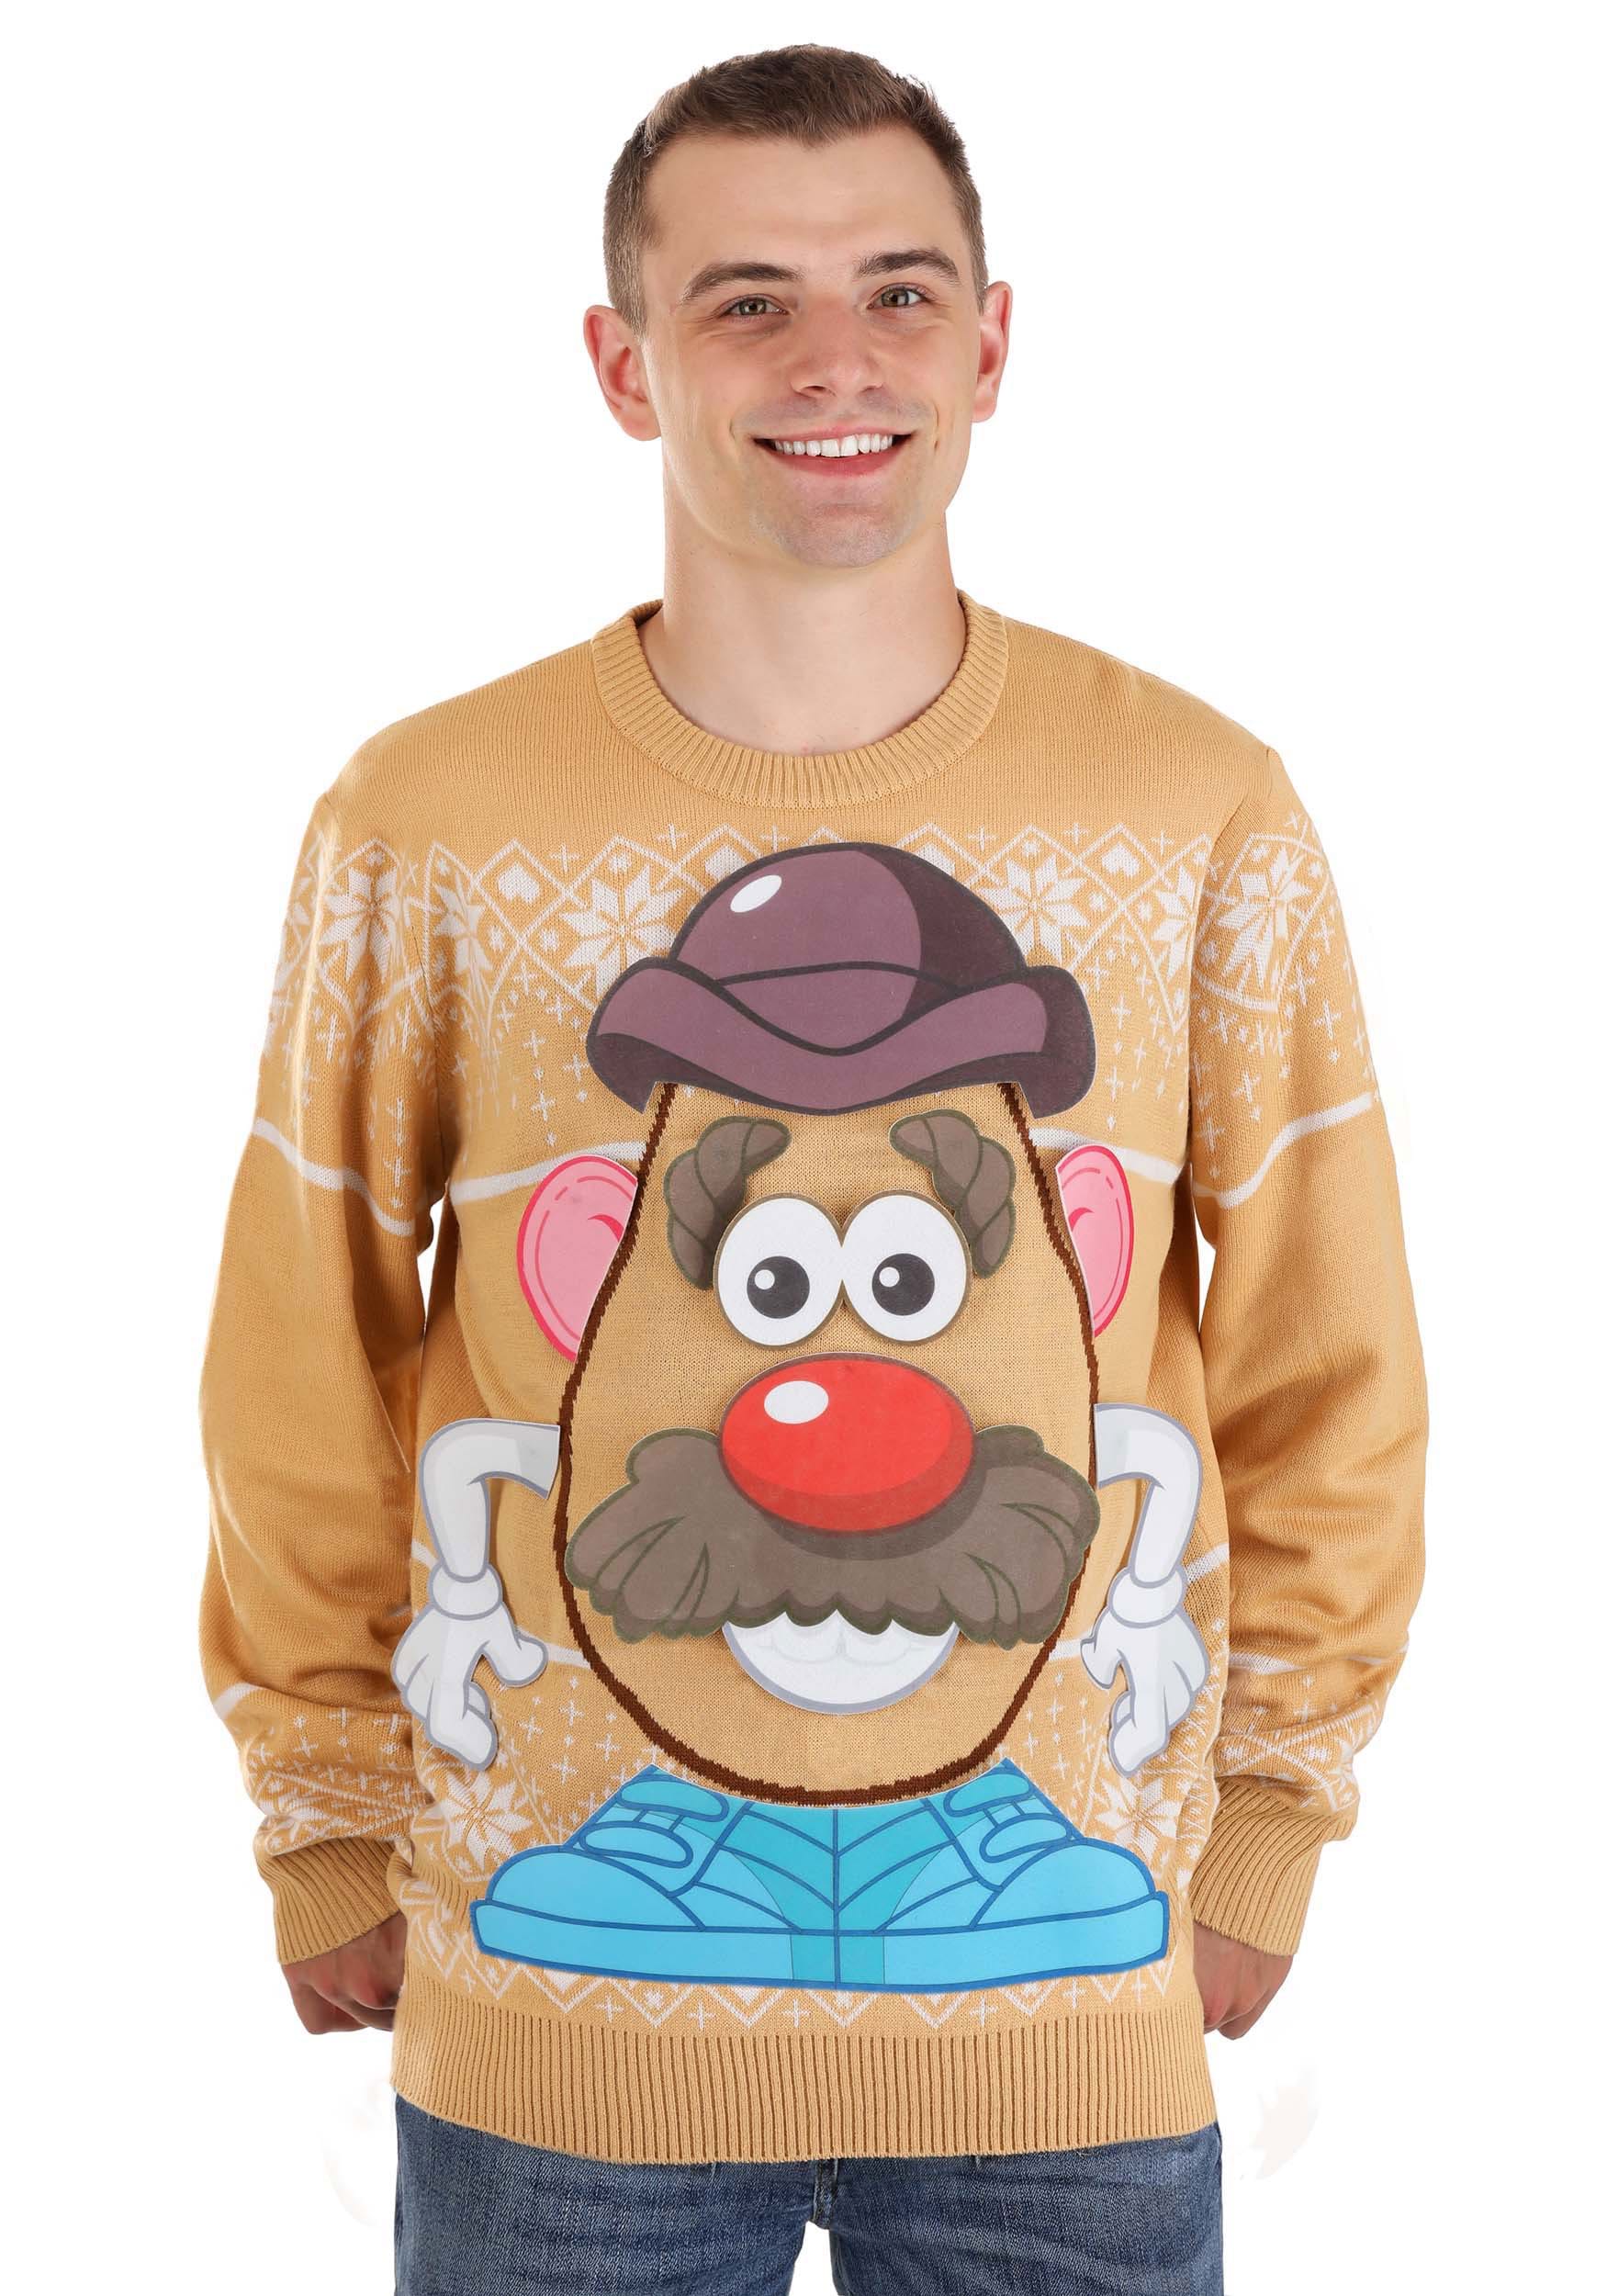 Image of Mr Potato Head Adult Sweater ID FUN3968AD-L